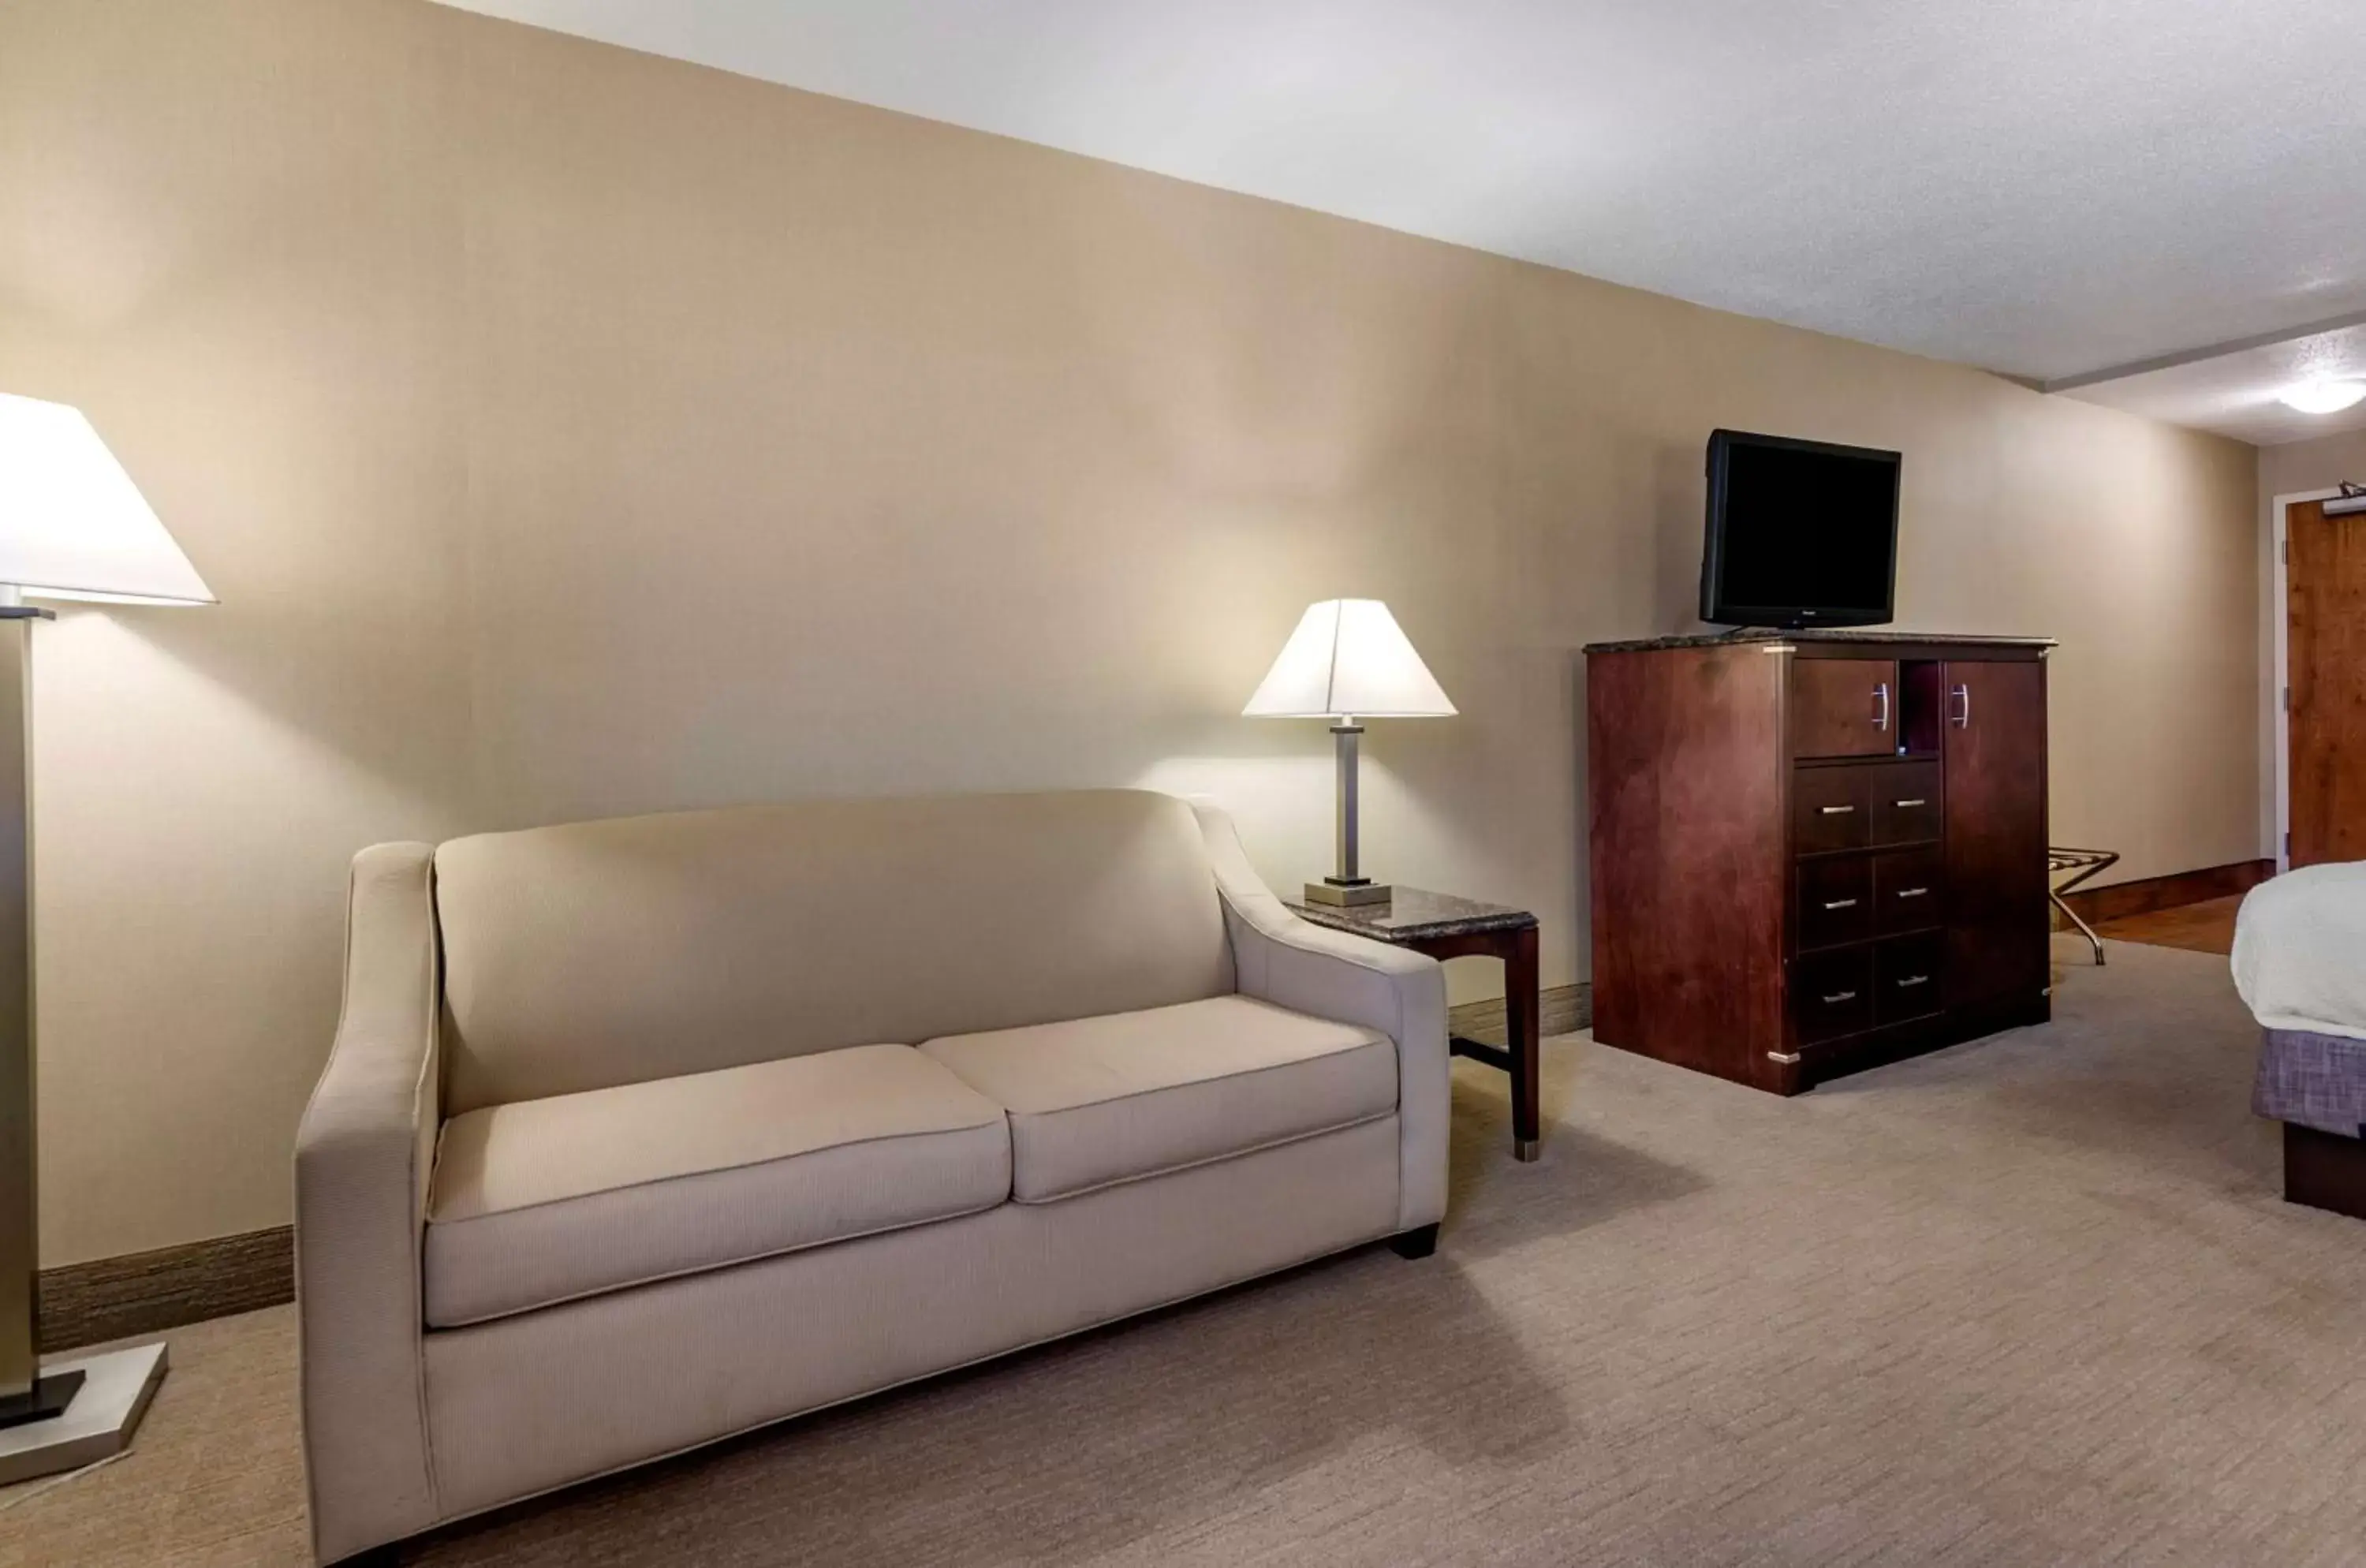 Bedroom, Seating Area in Best Western Plus Inn at Hunt Ridge